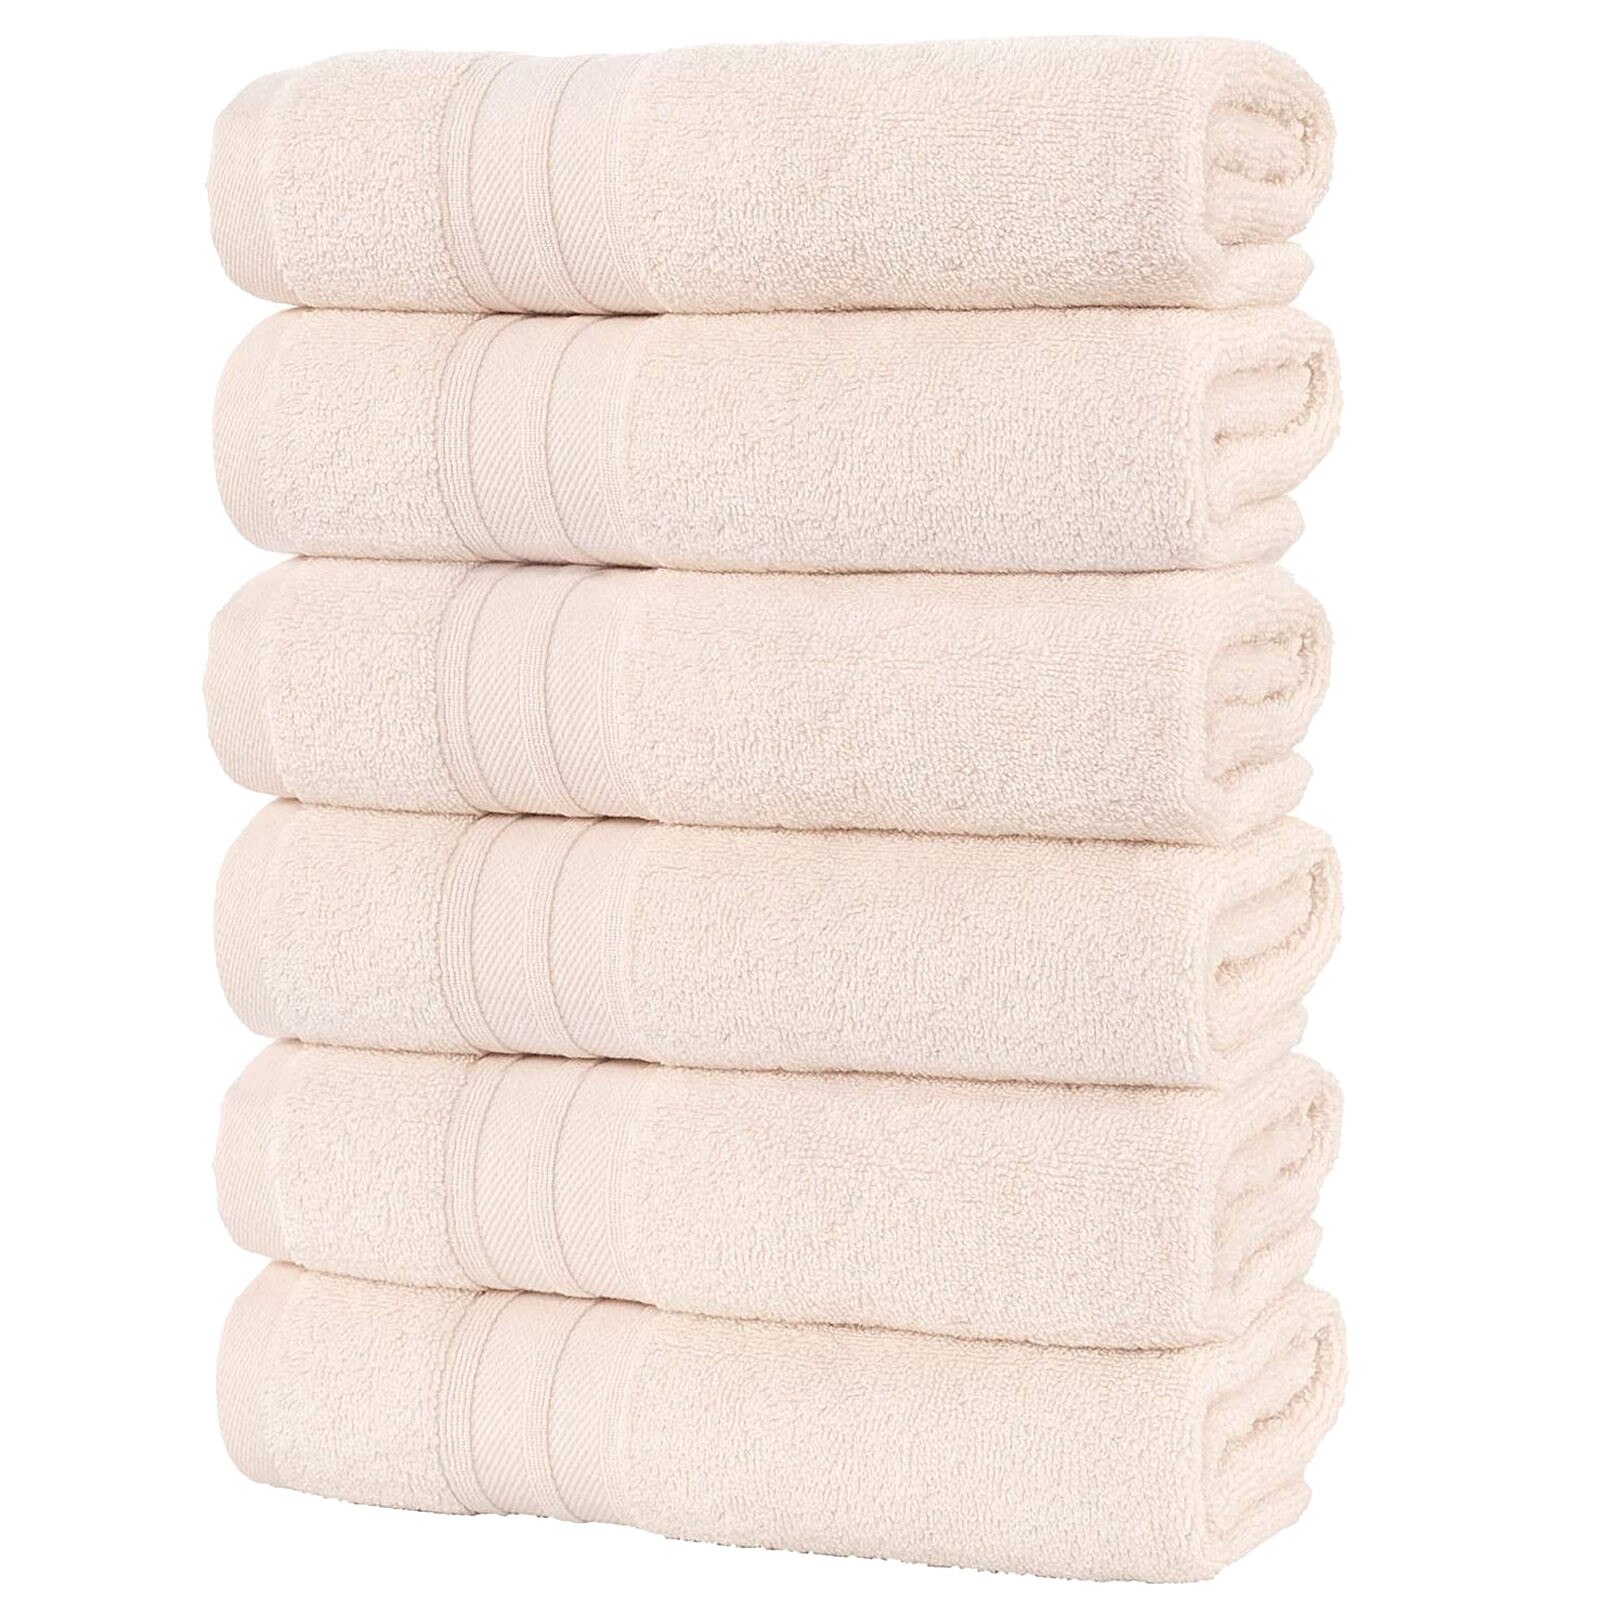 6Pcs Badkamer Handdoeken Zachte Absorberende En Dikke Katoenen Handdoeken Zachte Absorberende Handdoeken Badkamer Benodigdheden Voor Drogen Haar # YL10: Roze